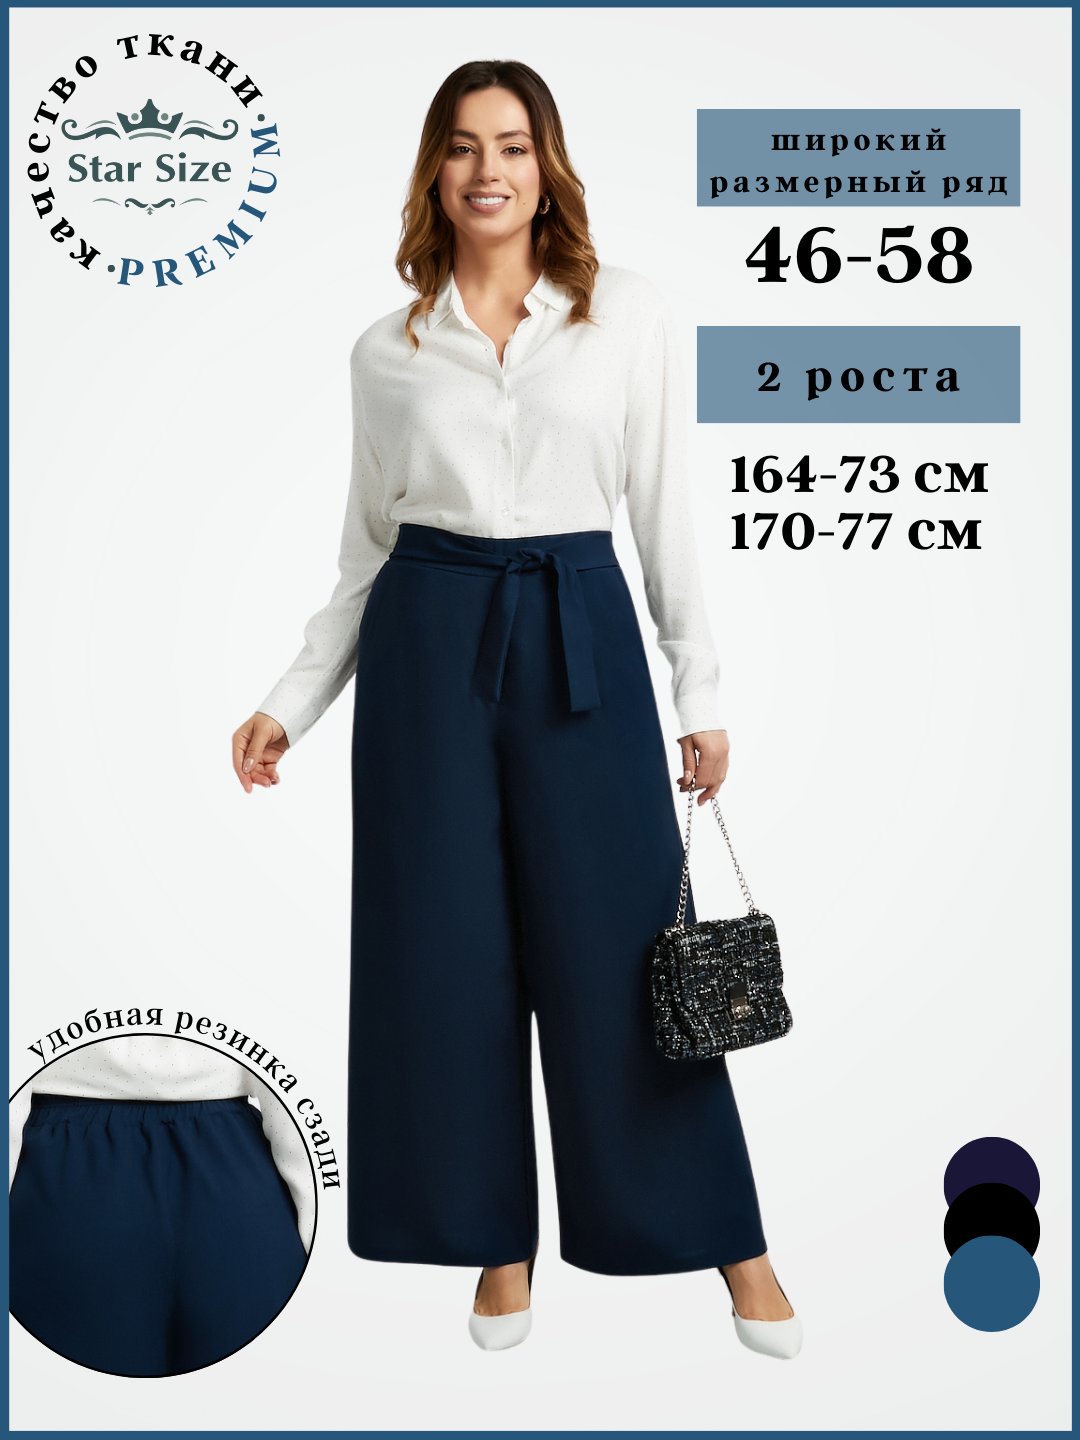 Брюки классические Star Size брюки летние женские больших размеров